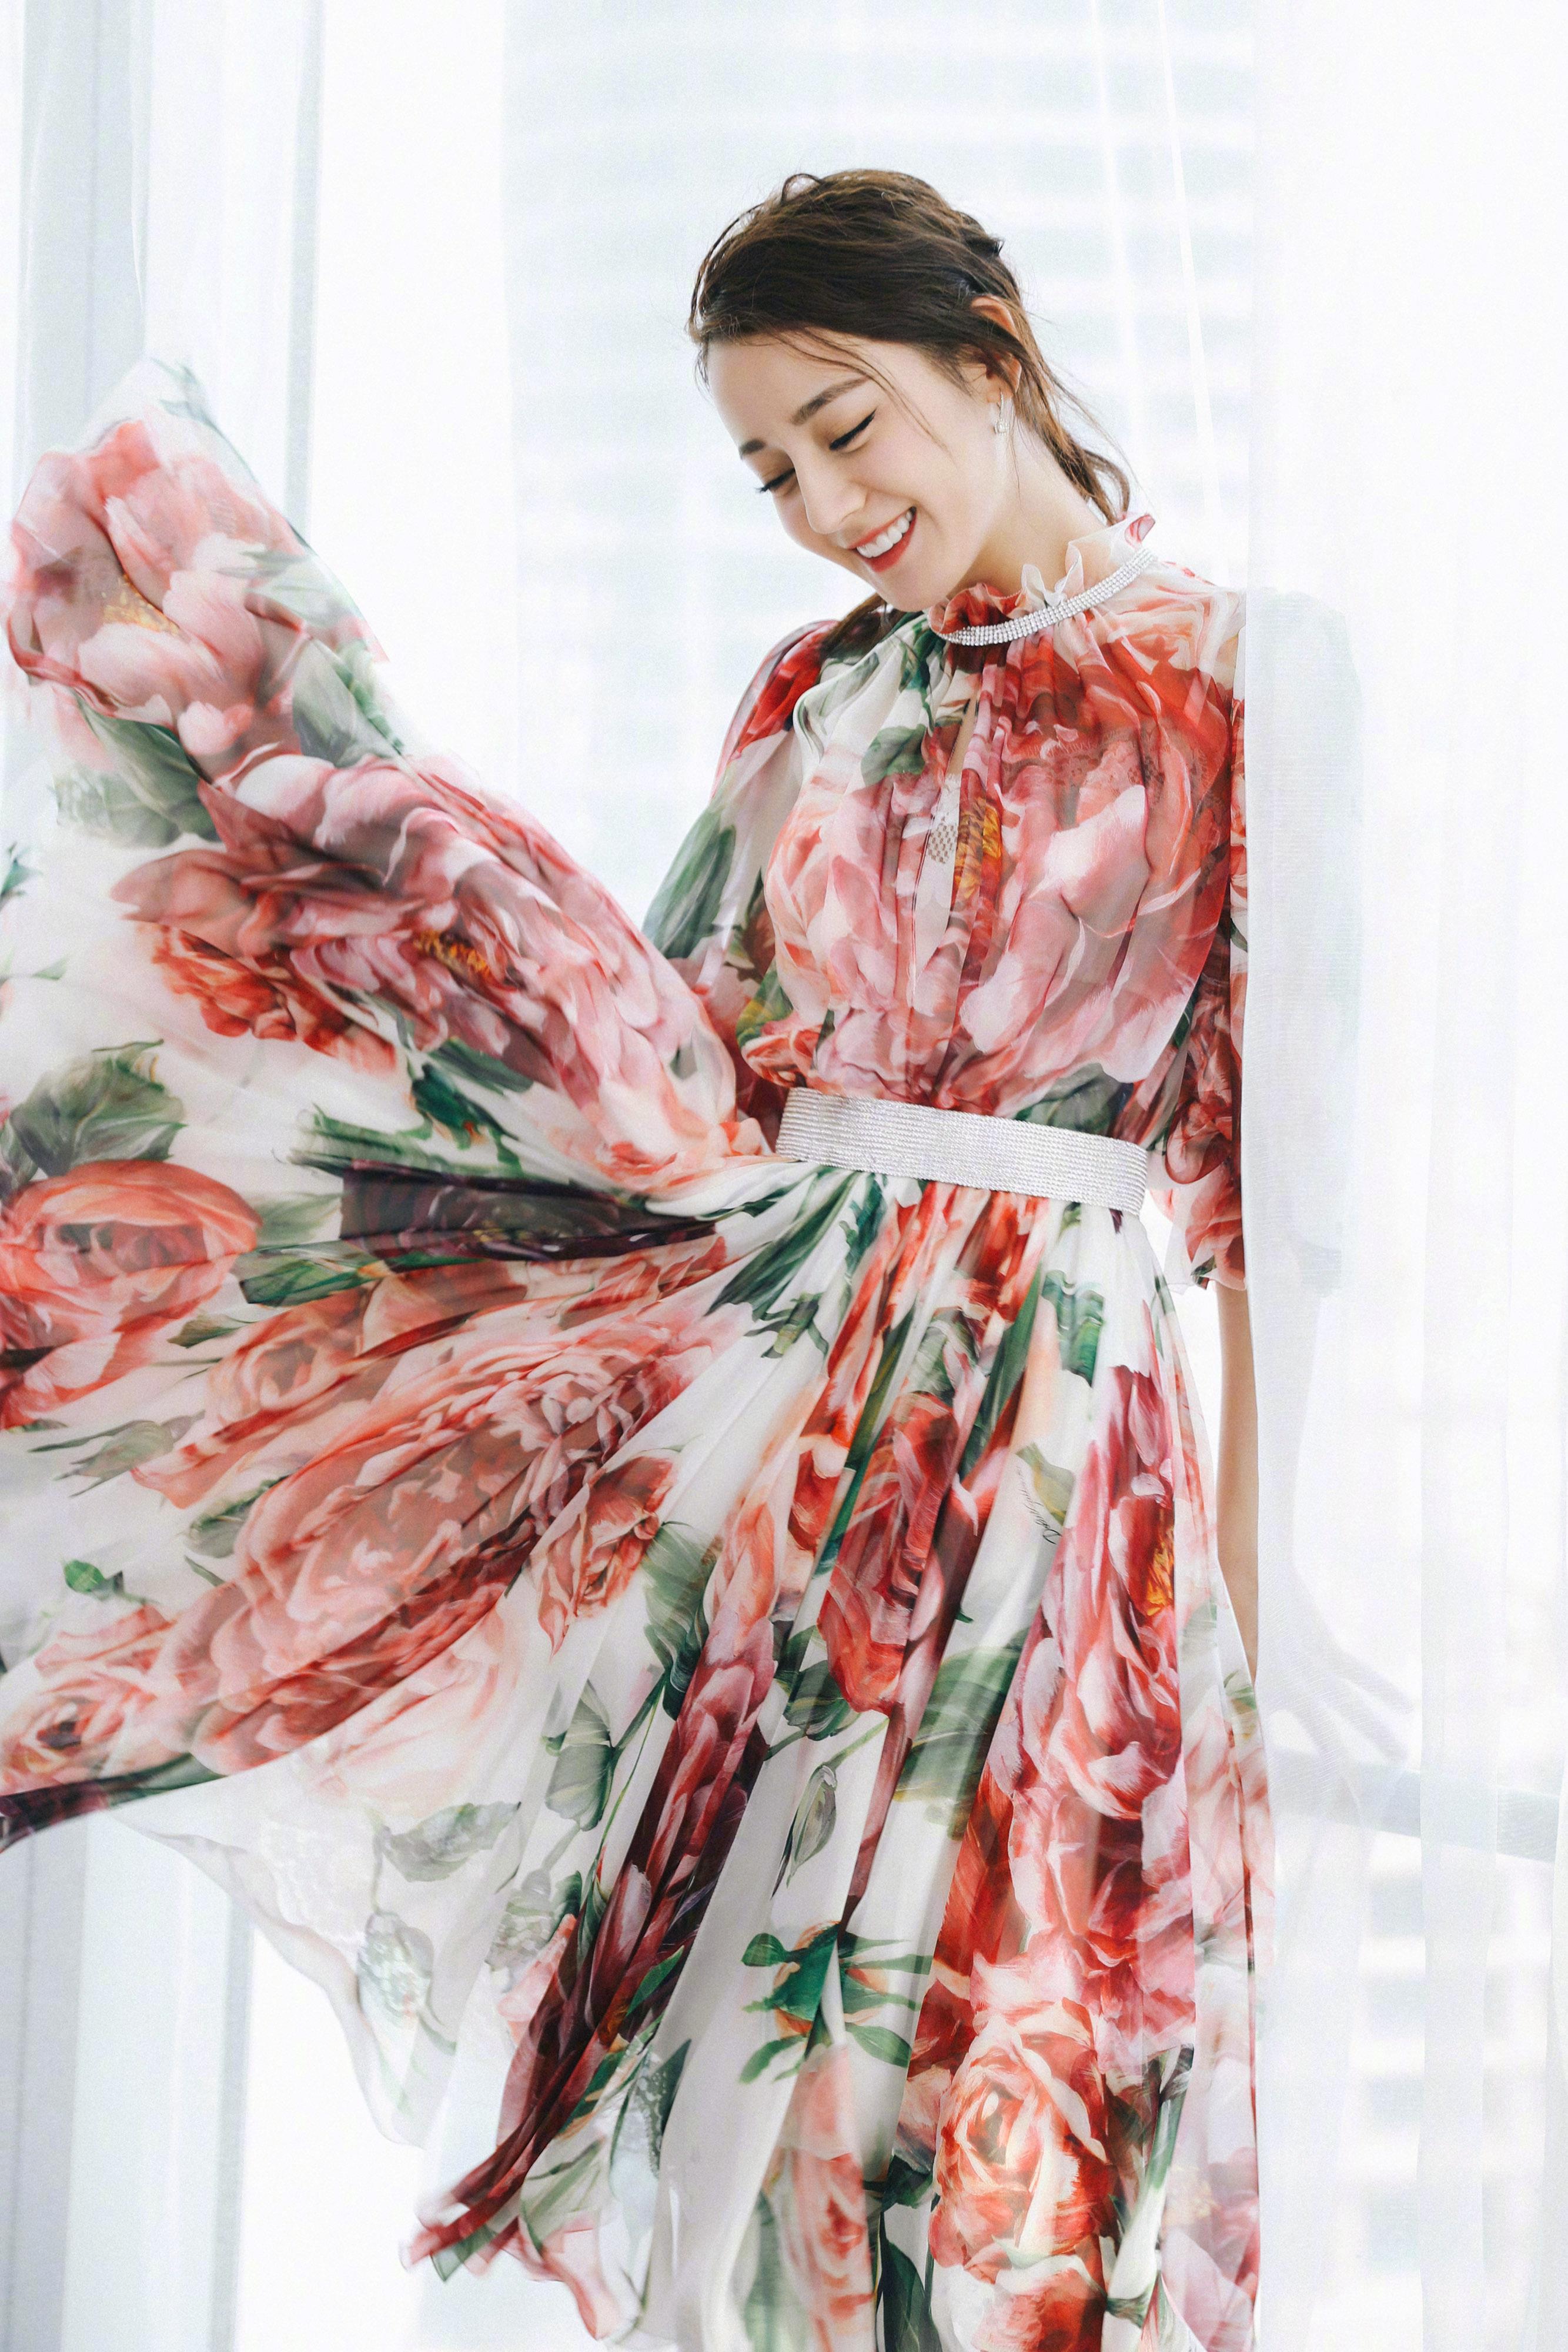 迪丽热巴 出席新电影《21克拉》发布会 依旧穿着Dolce & Gabbana的印花裙,